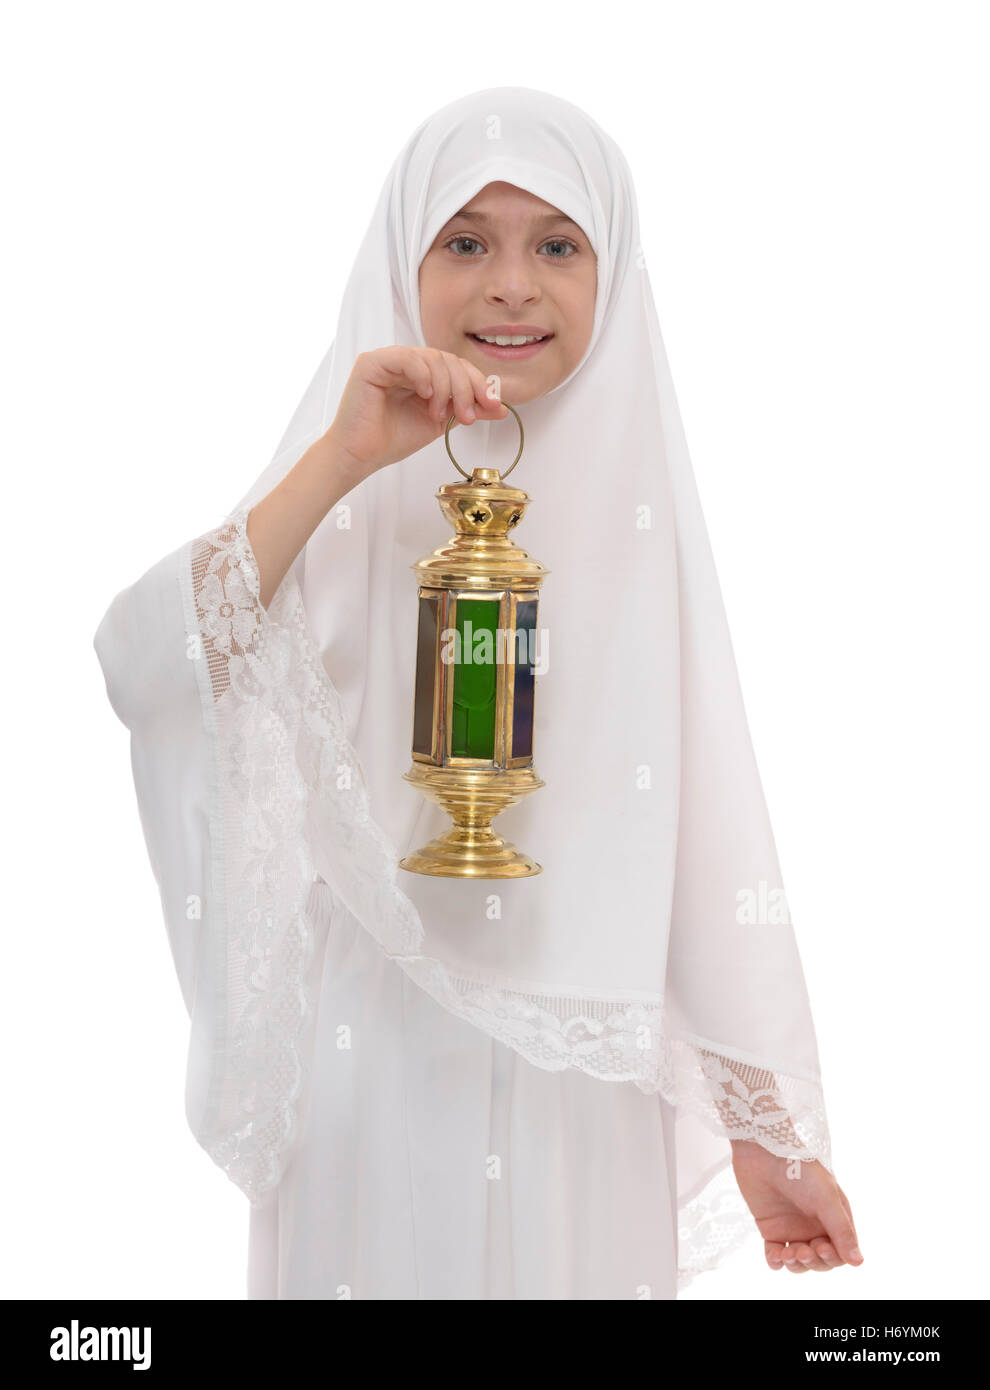 Heureux jeune musulmane célébrant le Ramadan tenant une lanterne isolé sur fond blanc Banque D'Images